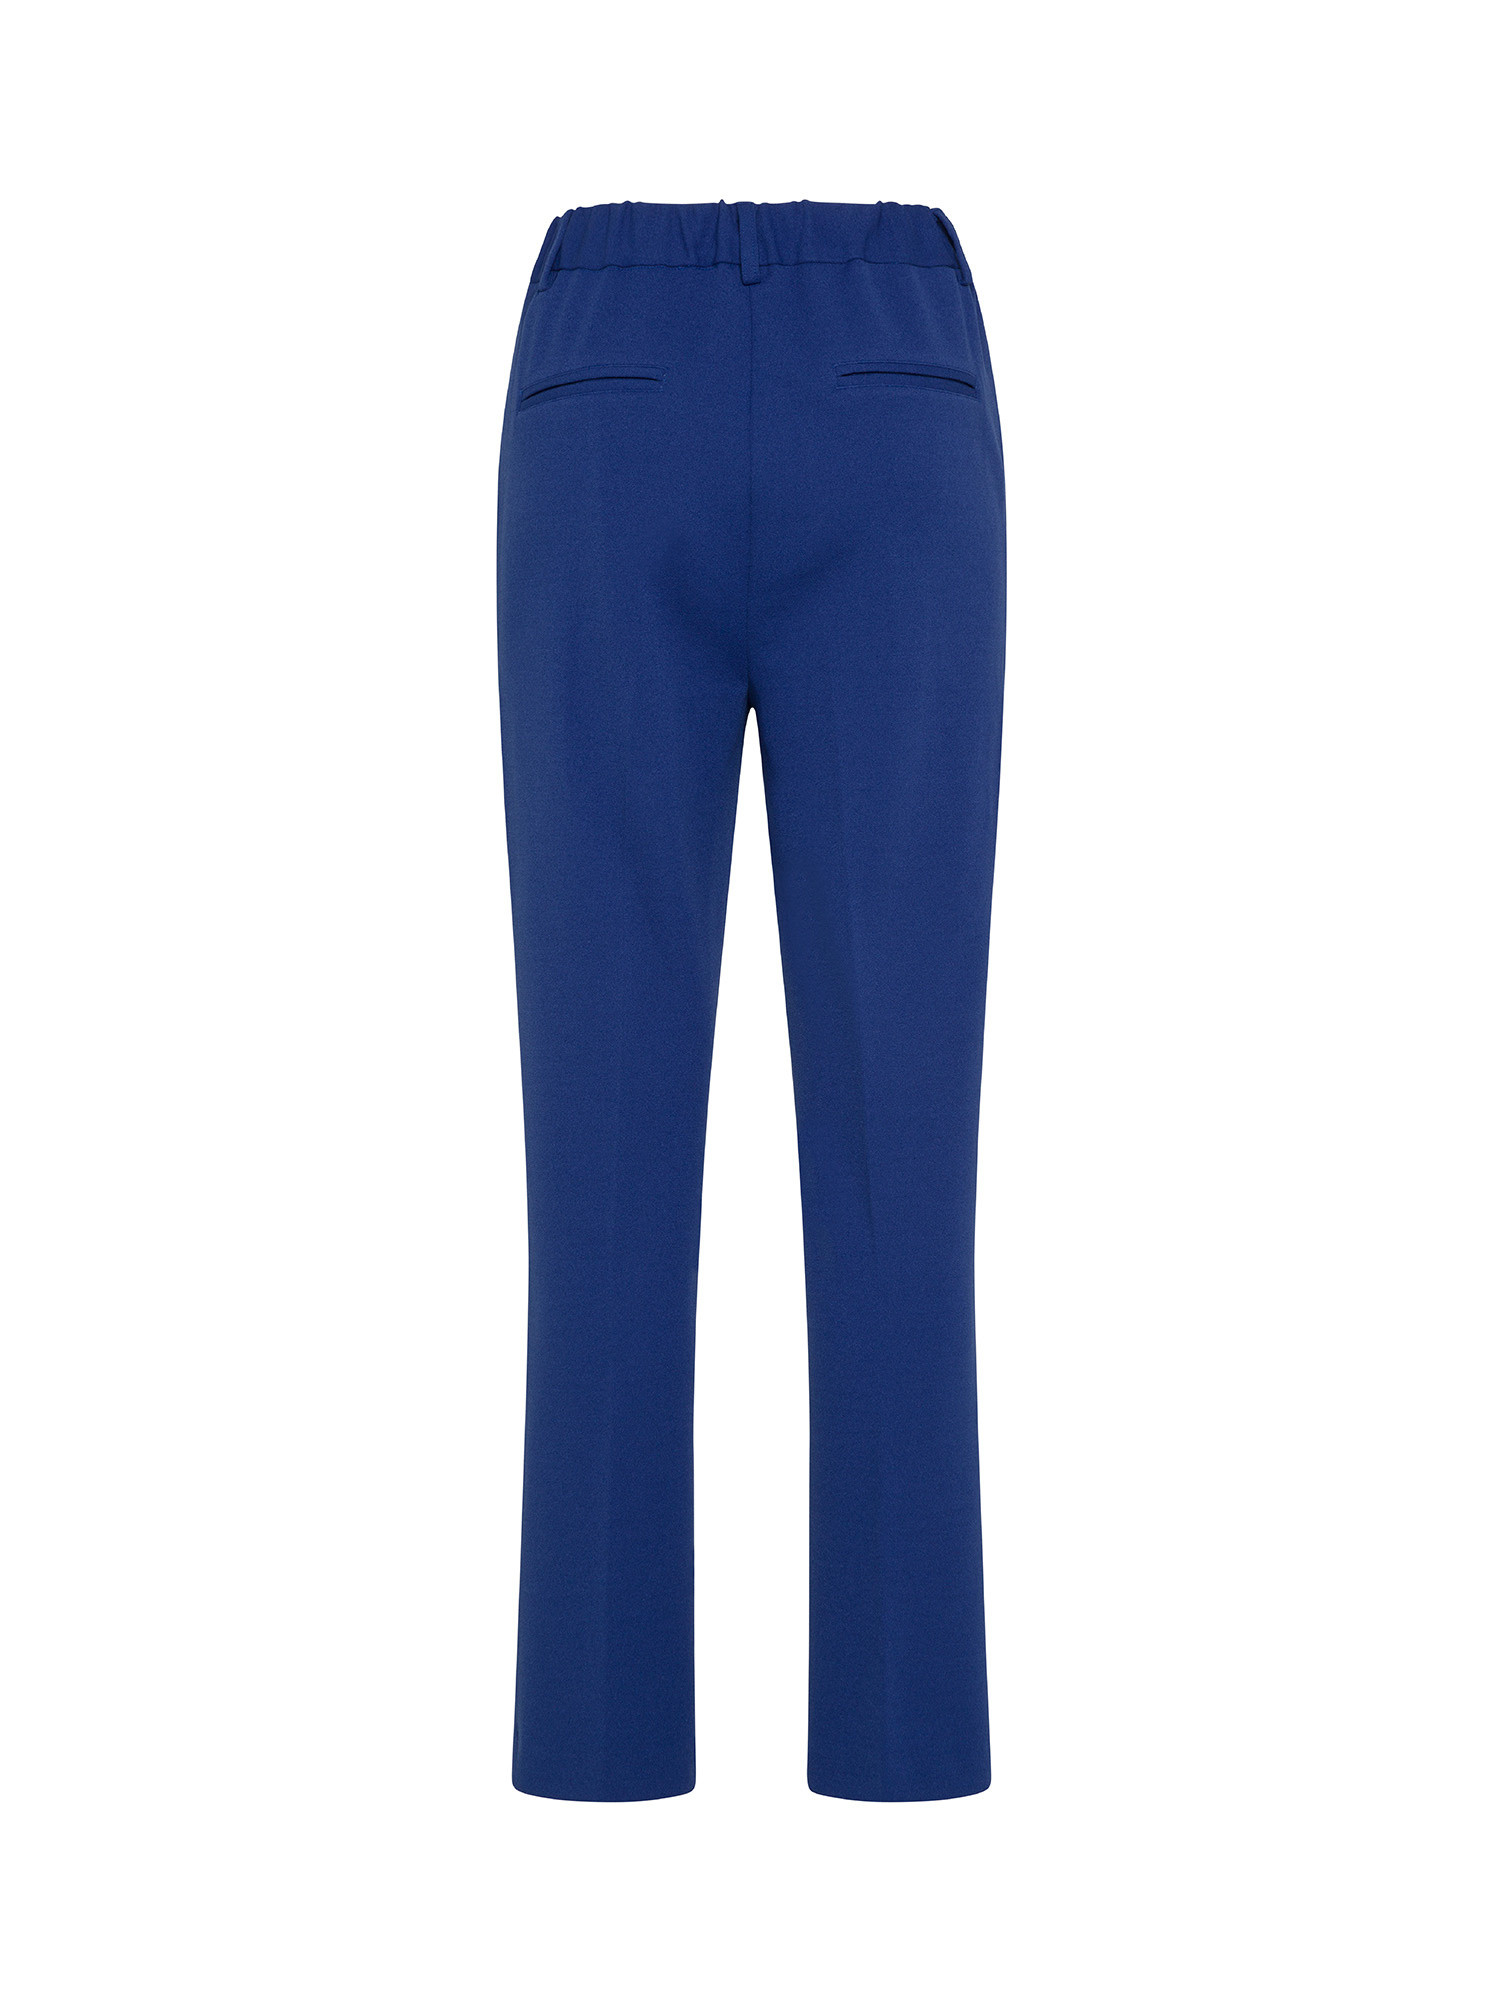 Koan - Pantaloni in crepe, Blu royal, large image number 1